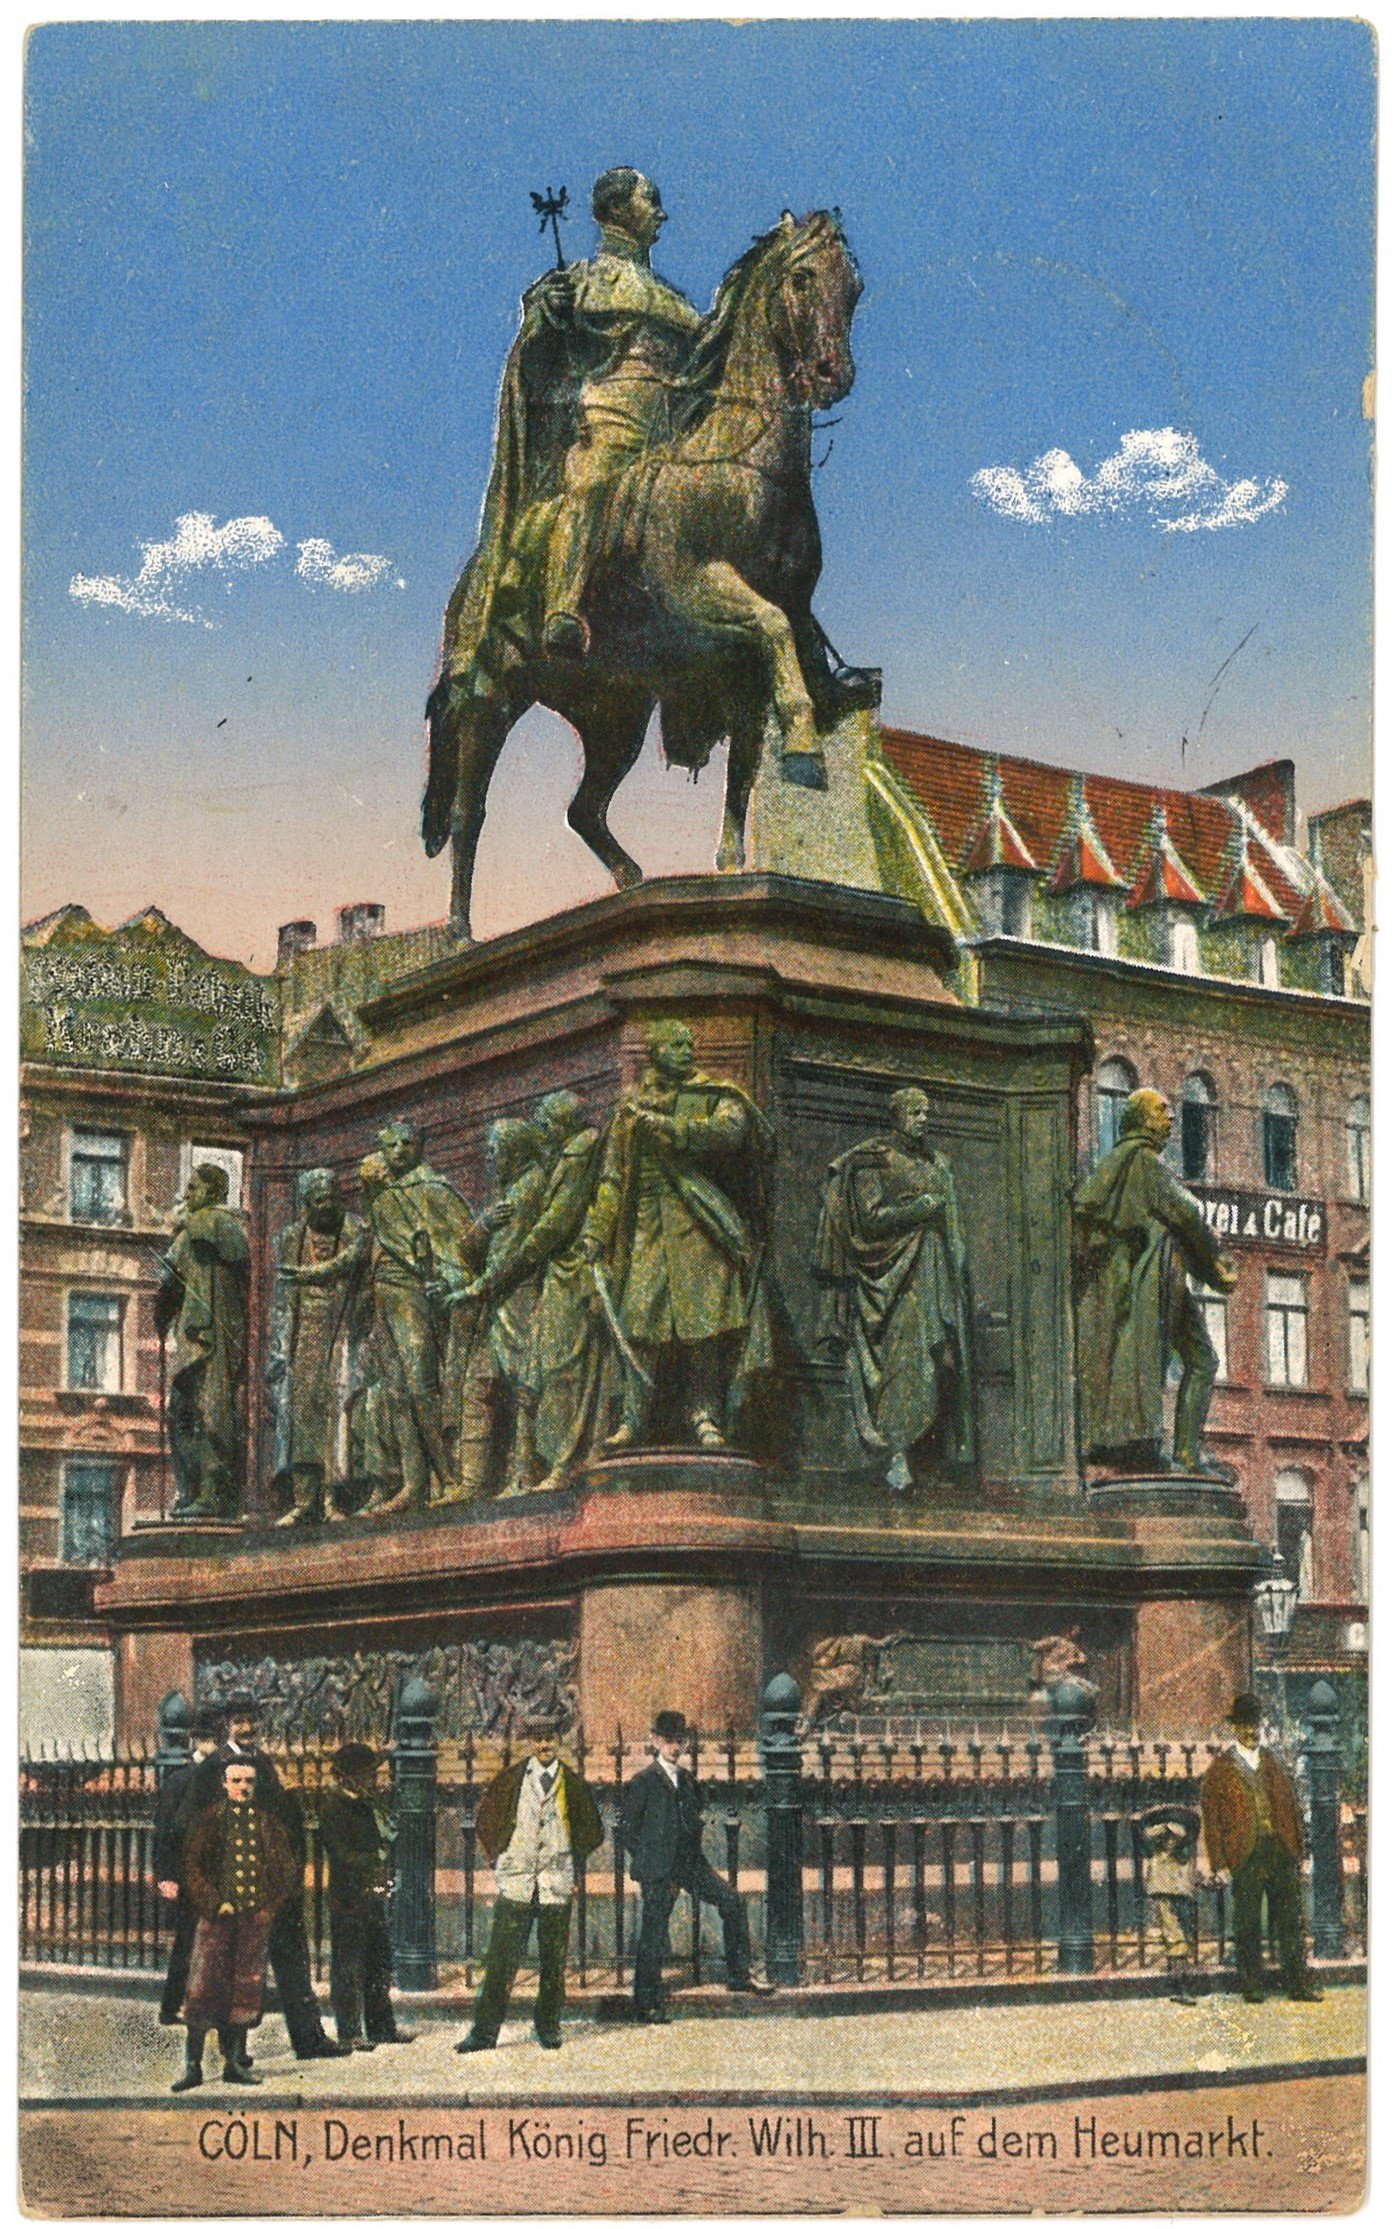 Köln: Reiterstandbild König Friedrich Wilhelms III. von Preußen auf dem Heumarkt (Landesgeschichtliche Vereinigung für die Mark Brandenburg e.V. CC BY)